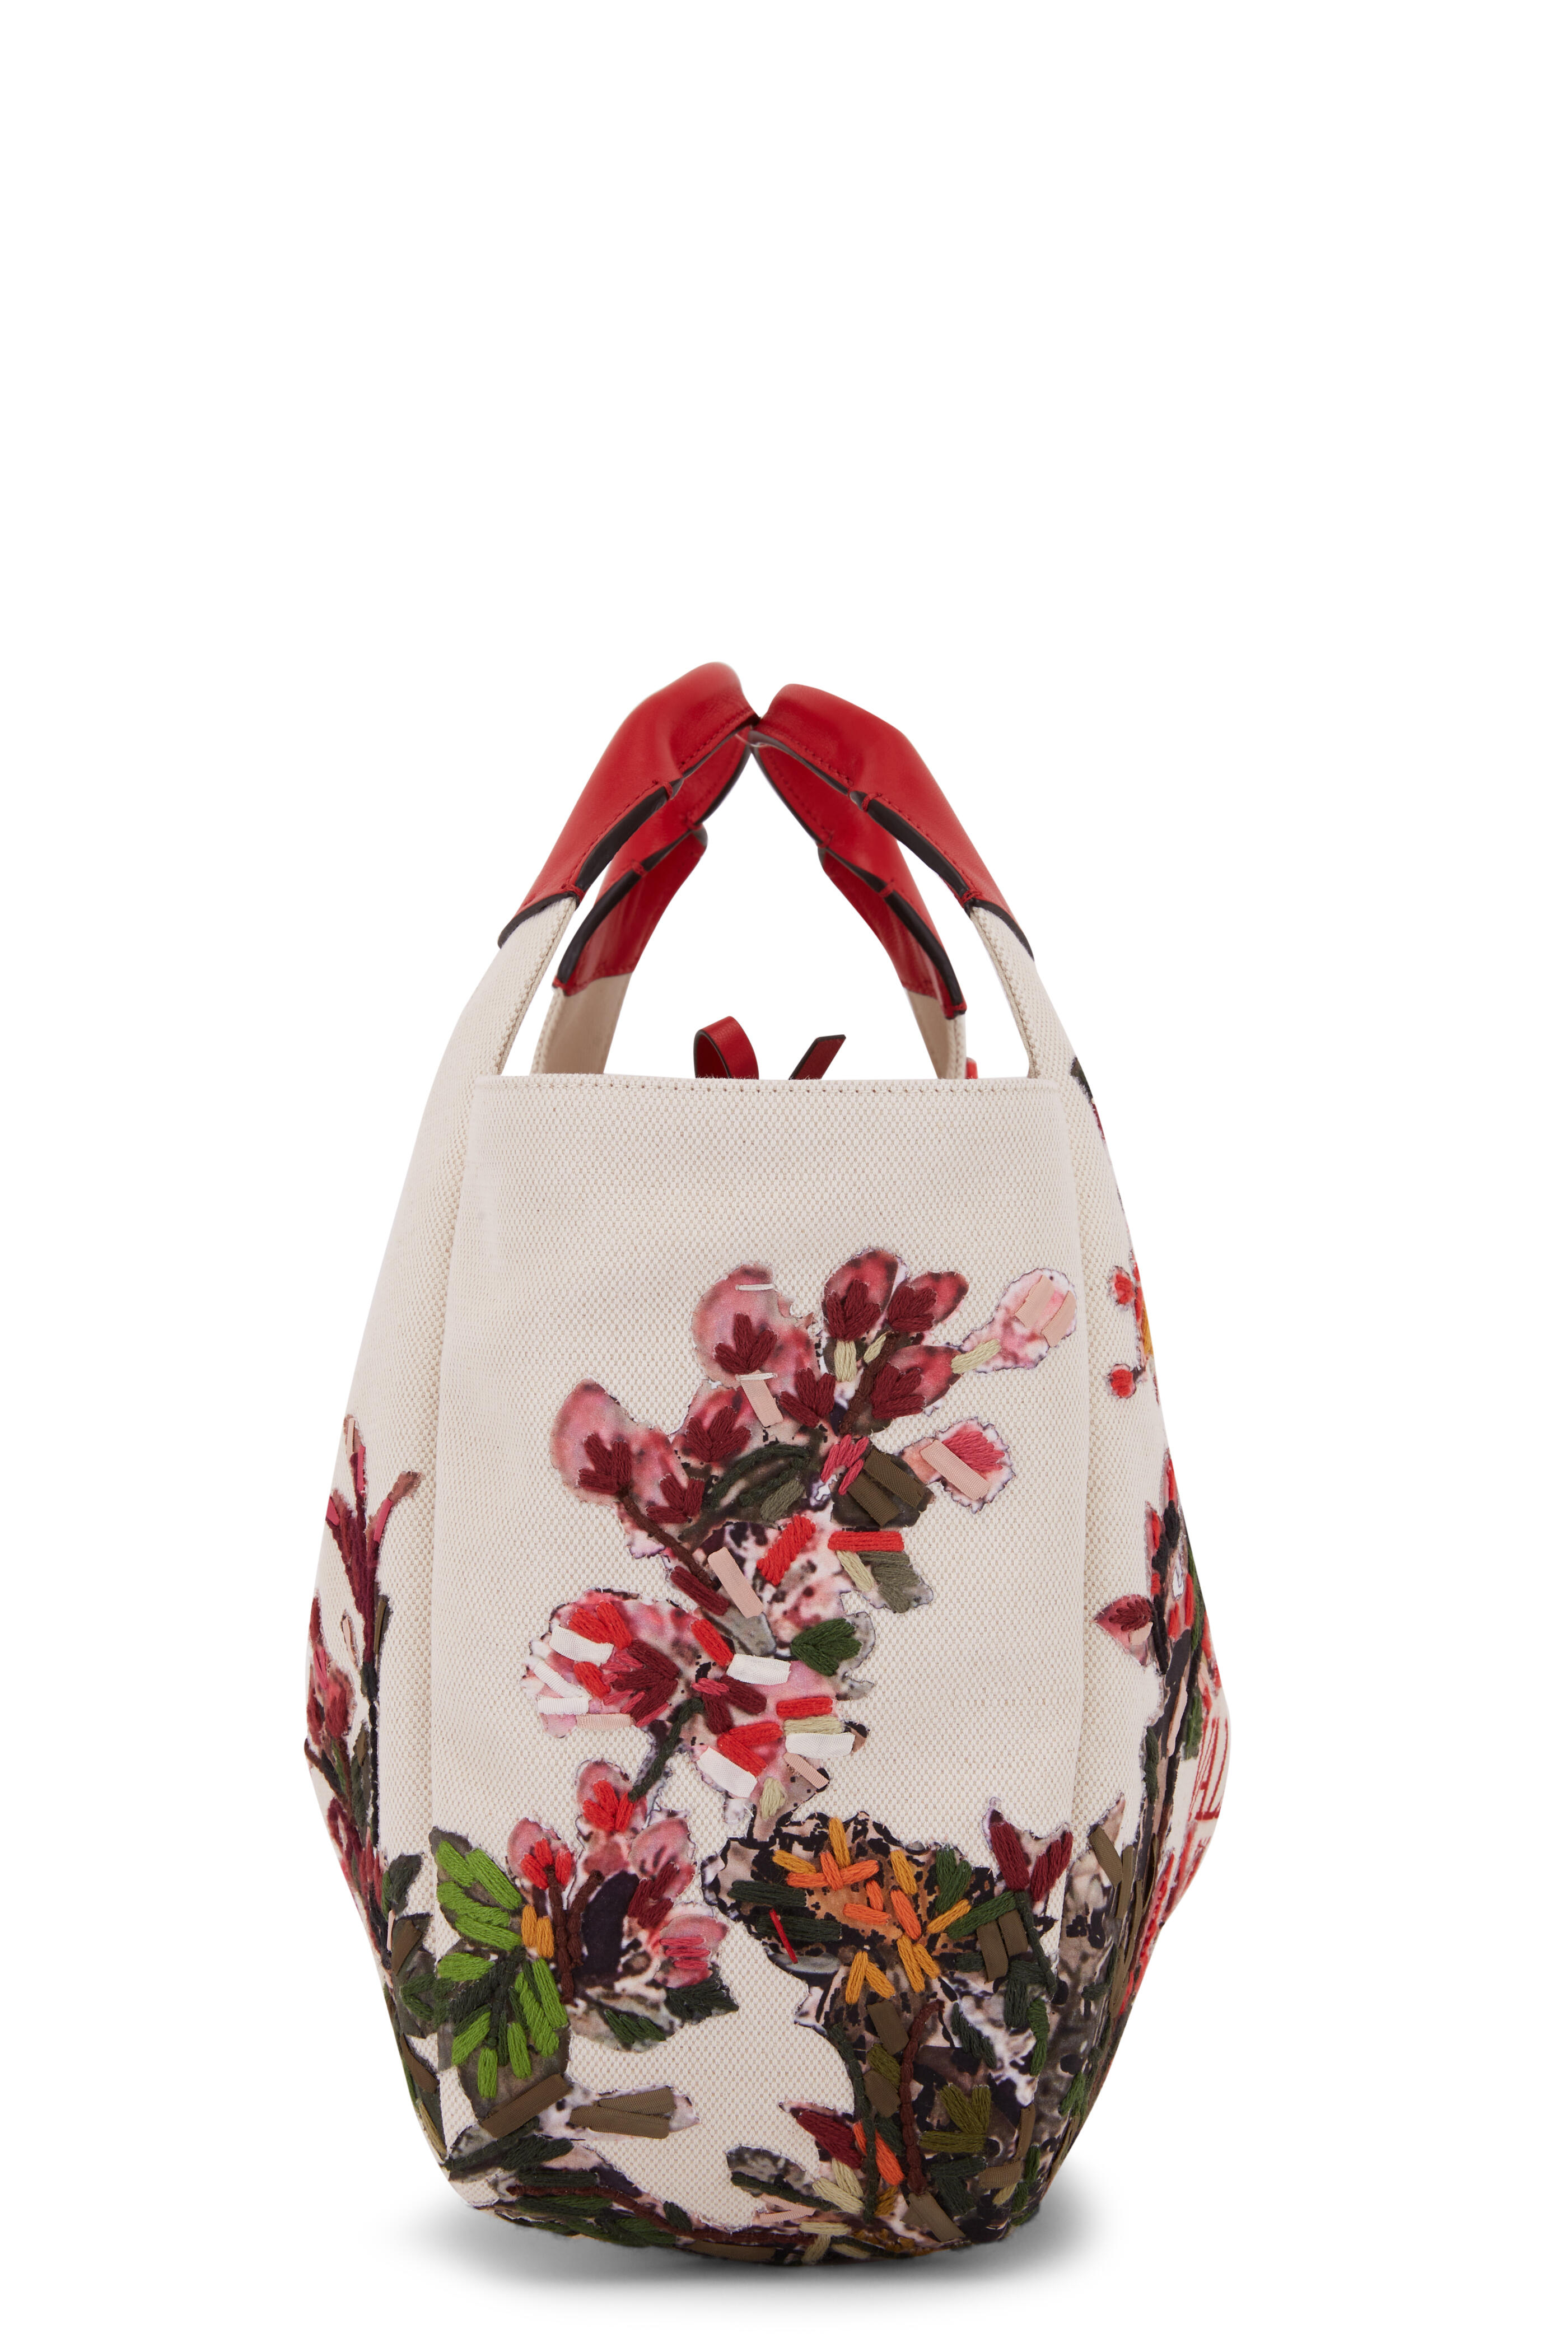 Valentino Garavani Garden Flower Rockstud Straw Tote Bag